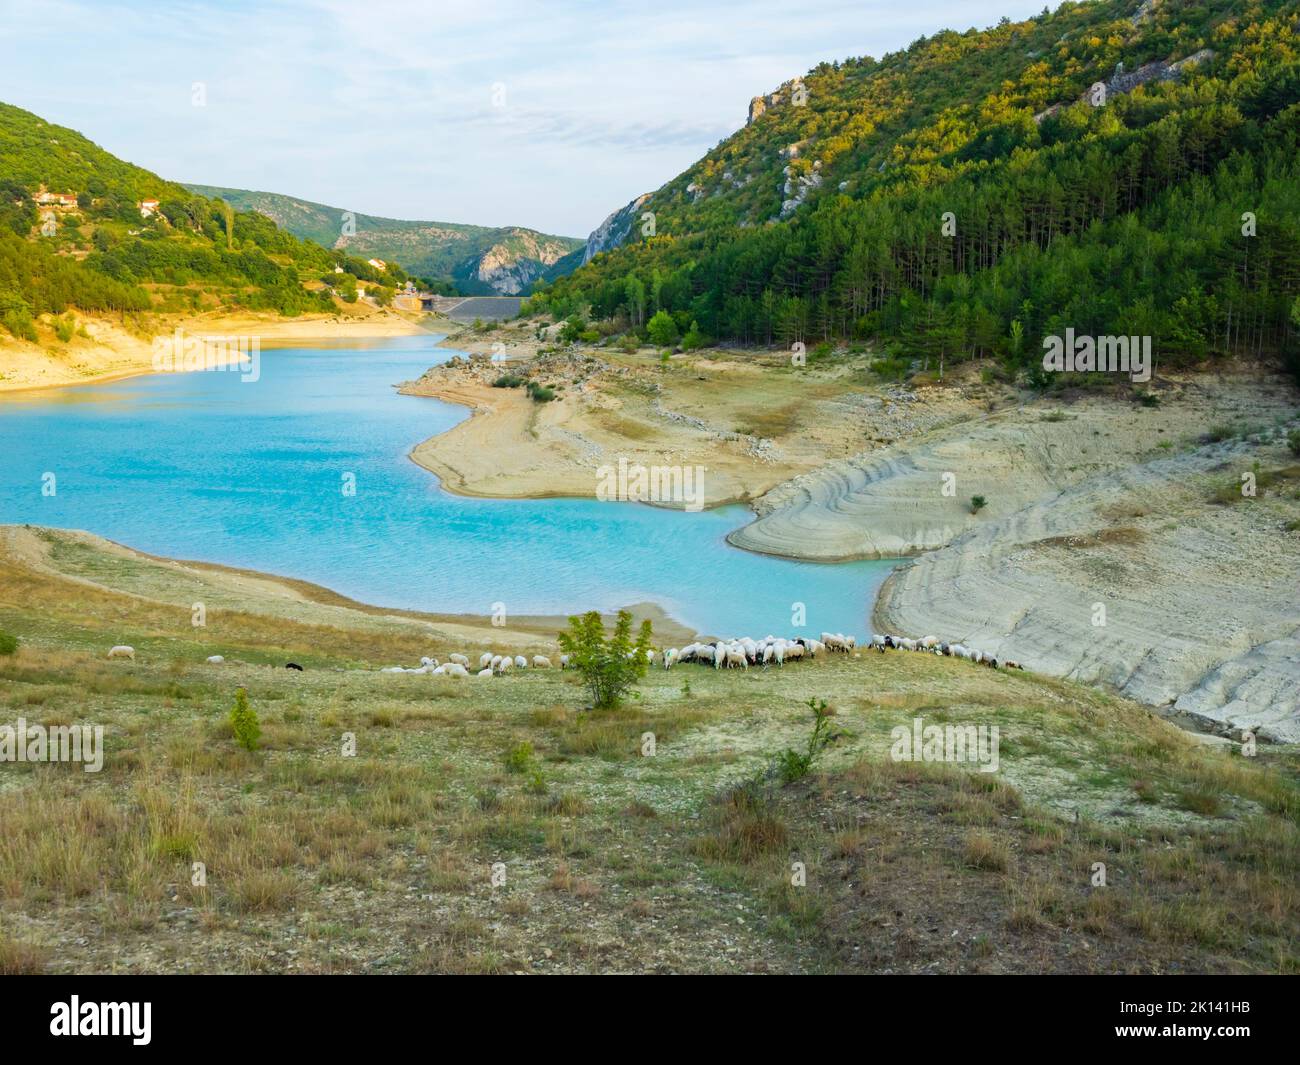 Lake Ricice near Imotski in Croatia Europe Stock Photo